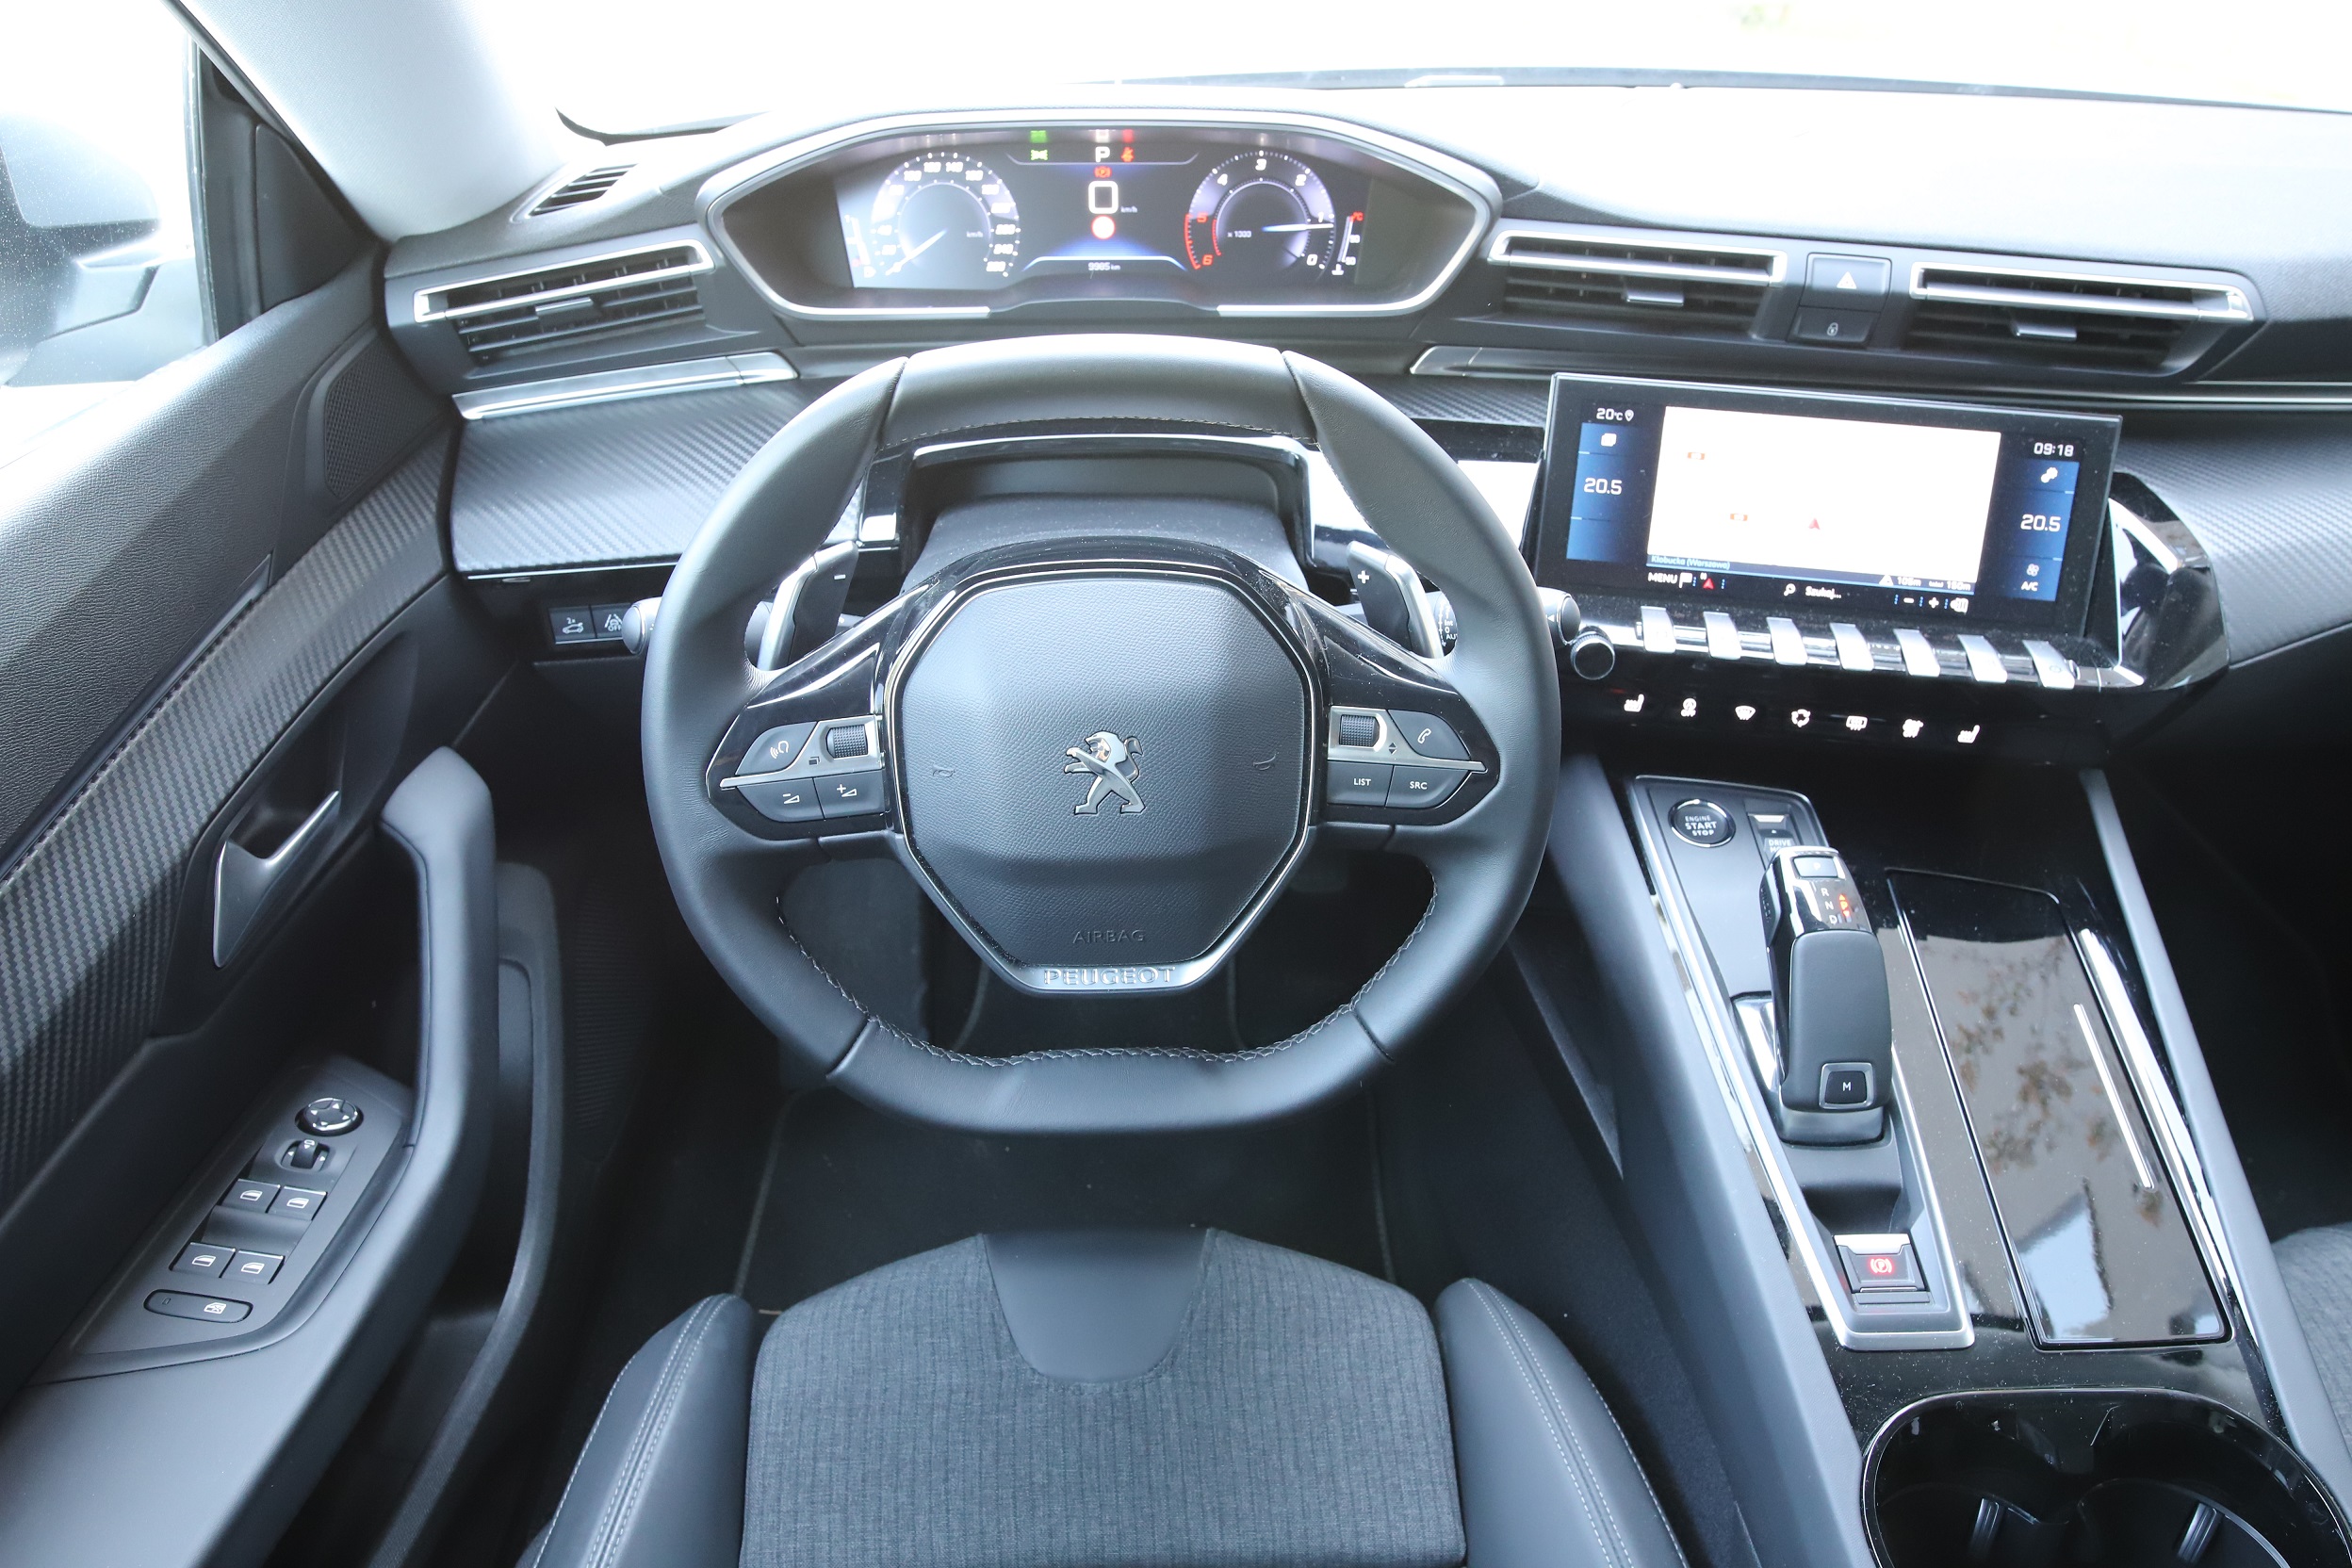 Peugeot 508 2.0 HDI test samochodu, wrażenia, specyfikacja